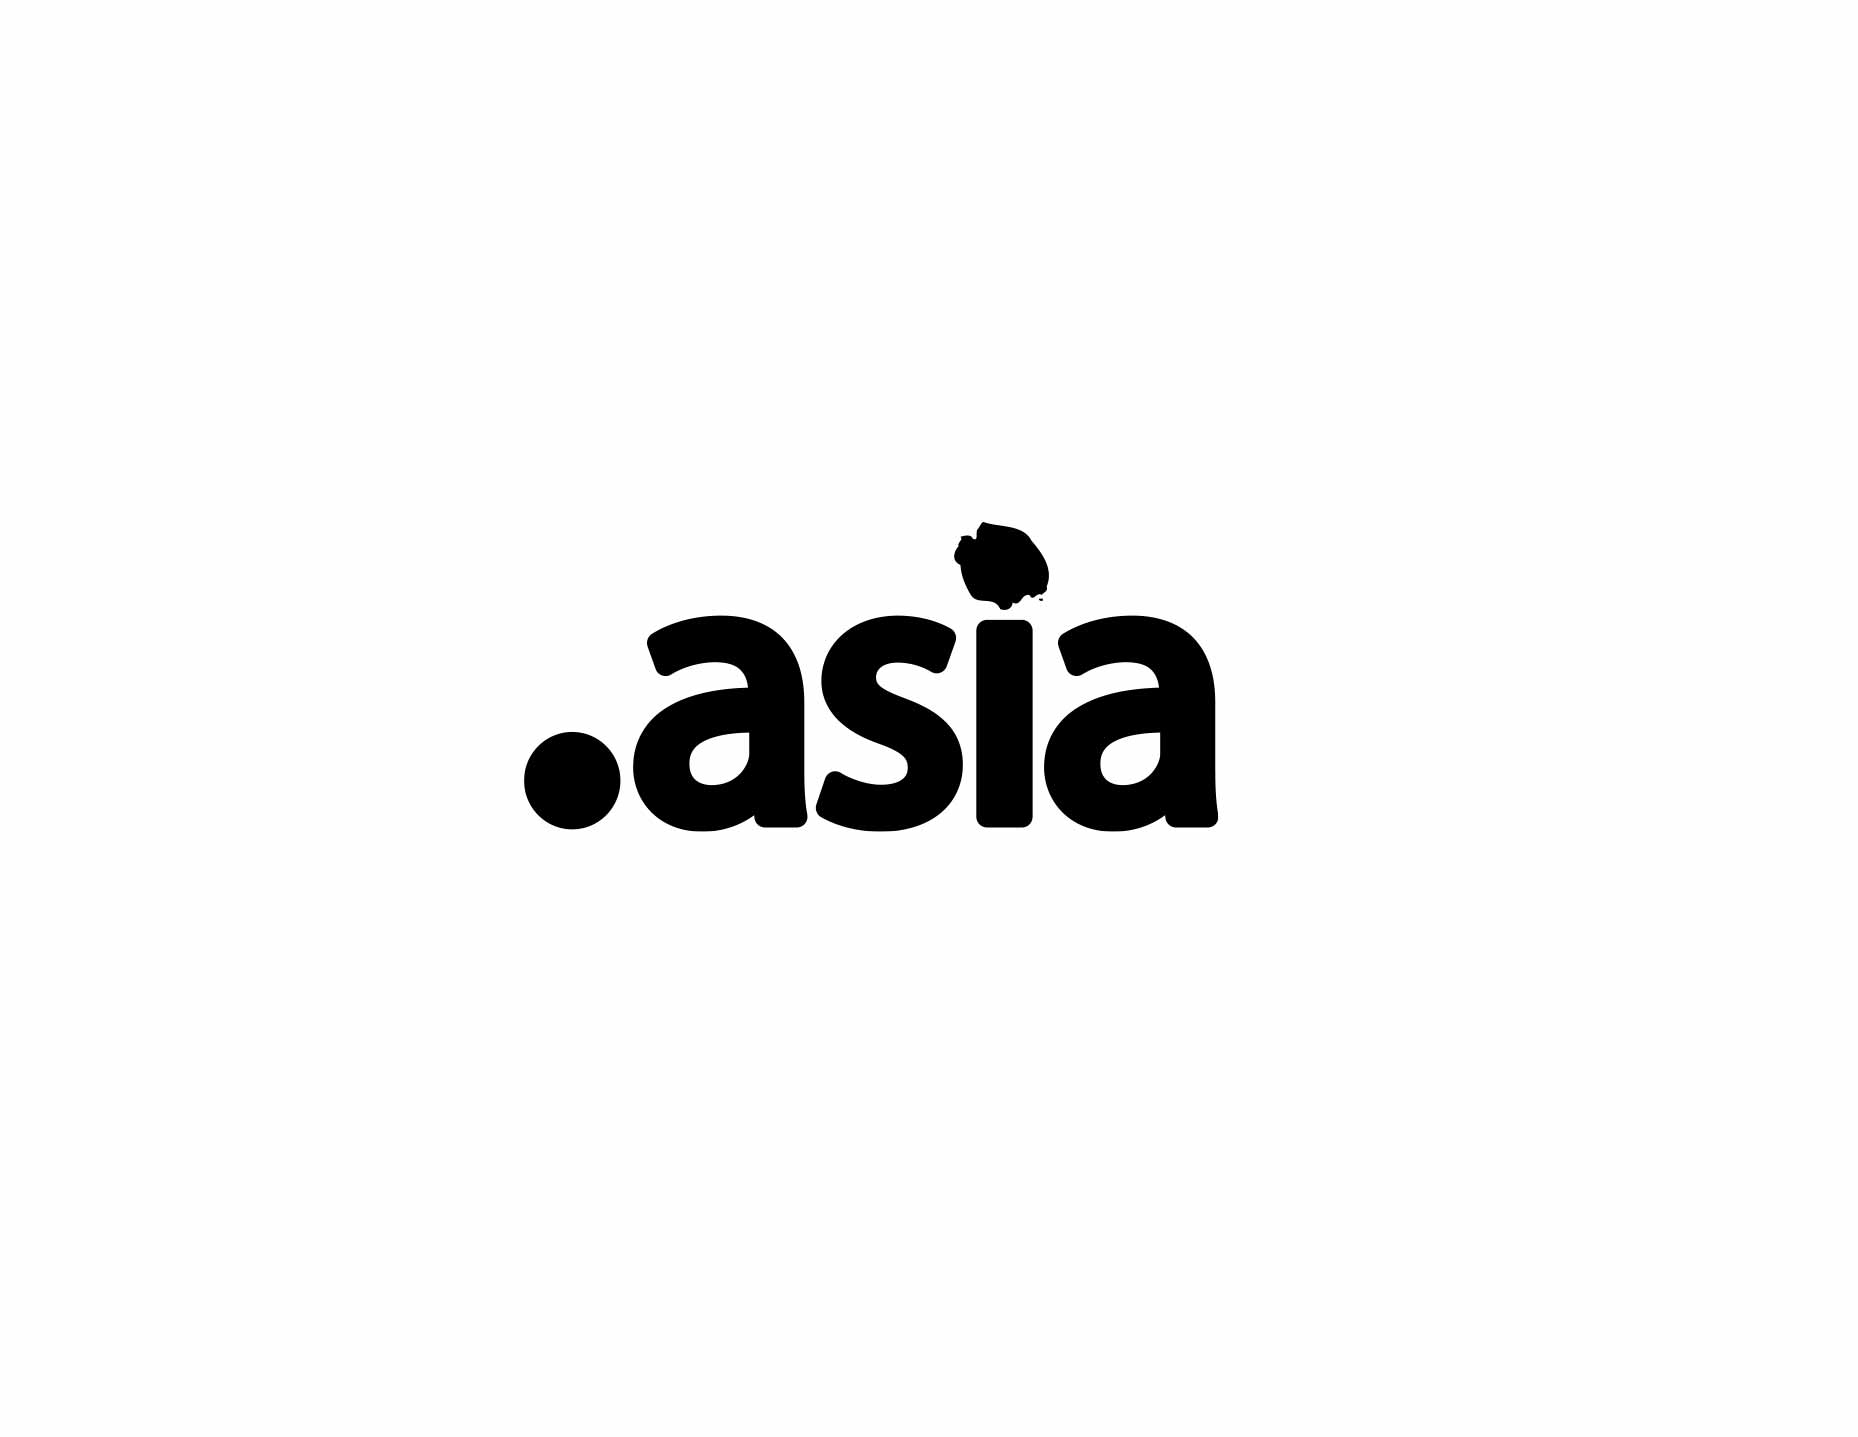 .Asia Logo Blk on Wht